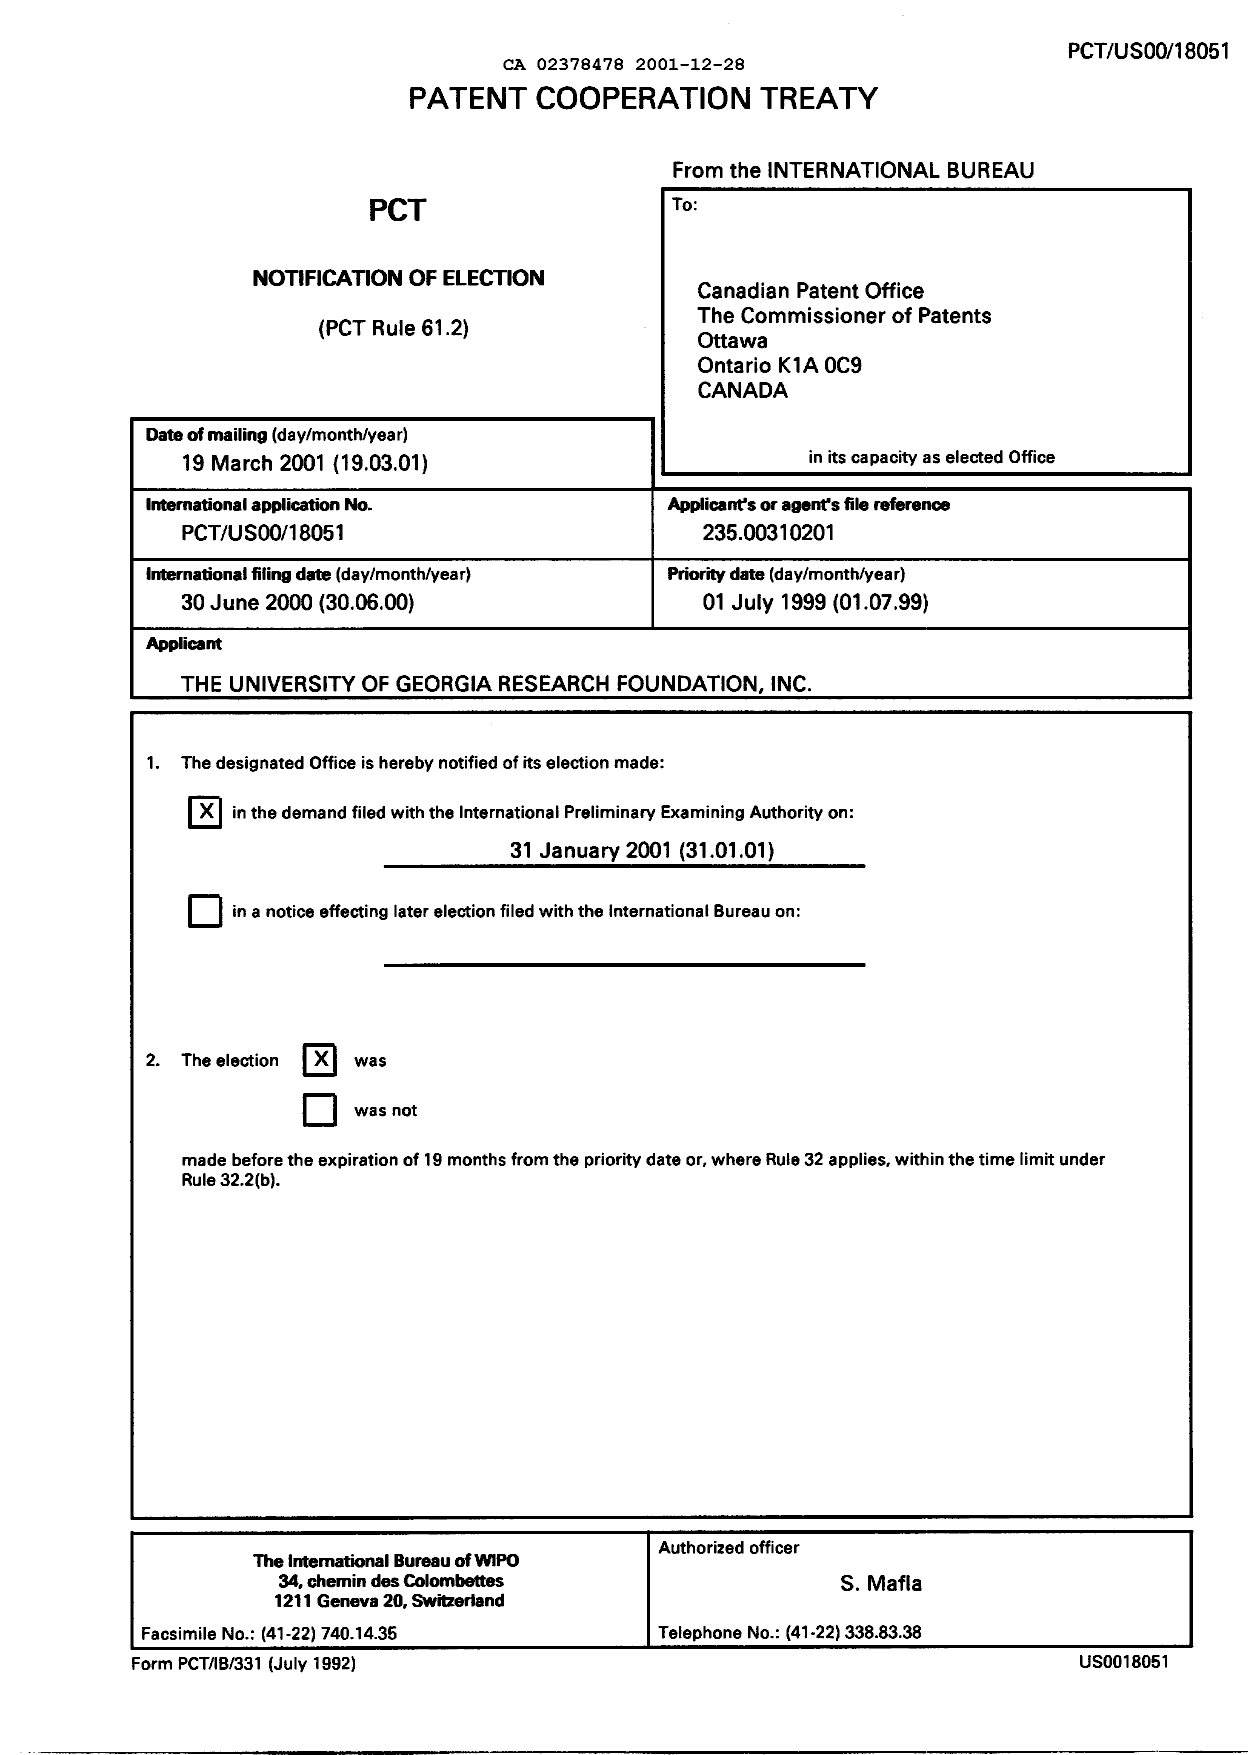 Document de brevet canadien 2378478. PCT 20001228. Image 1 de 12